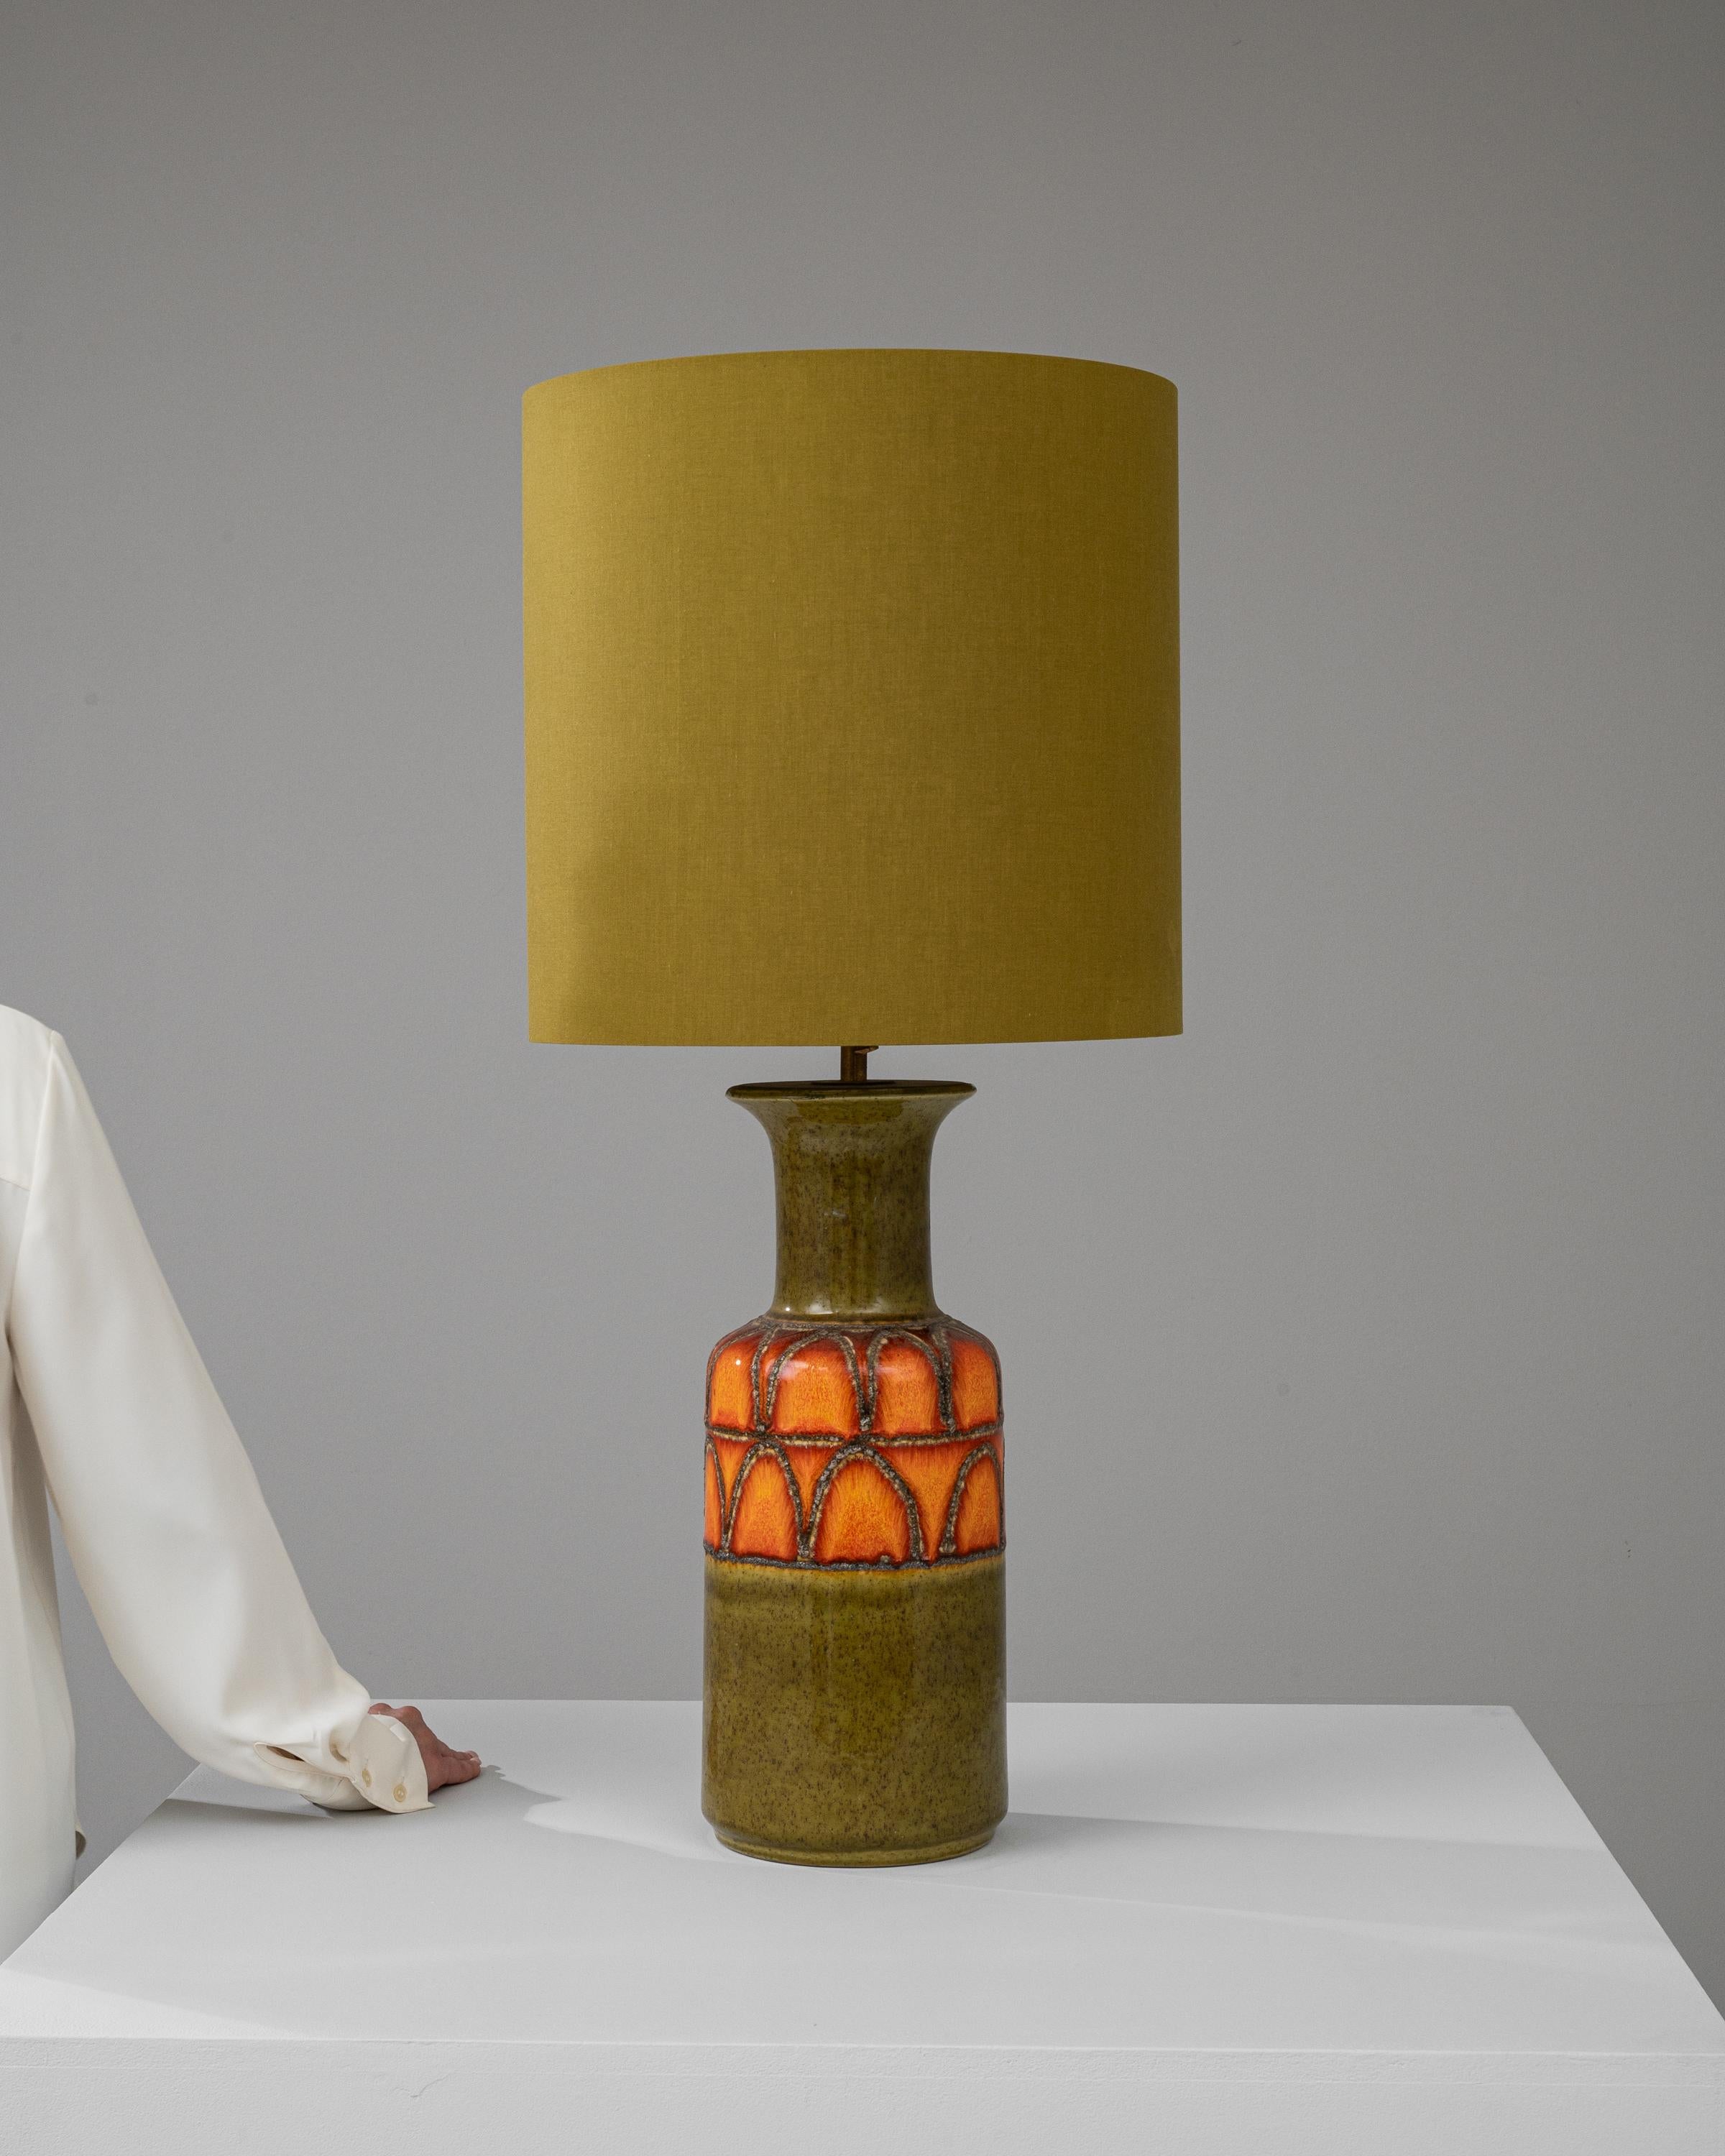 Rehaussez votre décoration intérieure avec l'allure vibrante de cette lampe à poser en céramique allemande du XXe siècle, véritable emblème du style rétro-chic. La base de la lampe séduit par sa teinte orange vif sur fond d'olive organique, créant